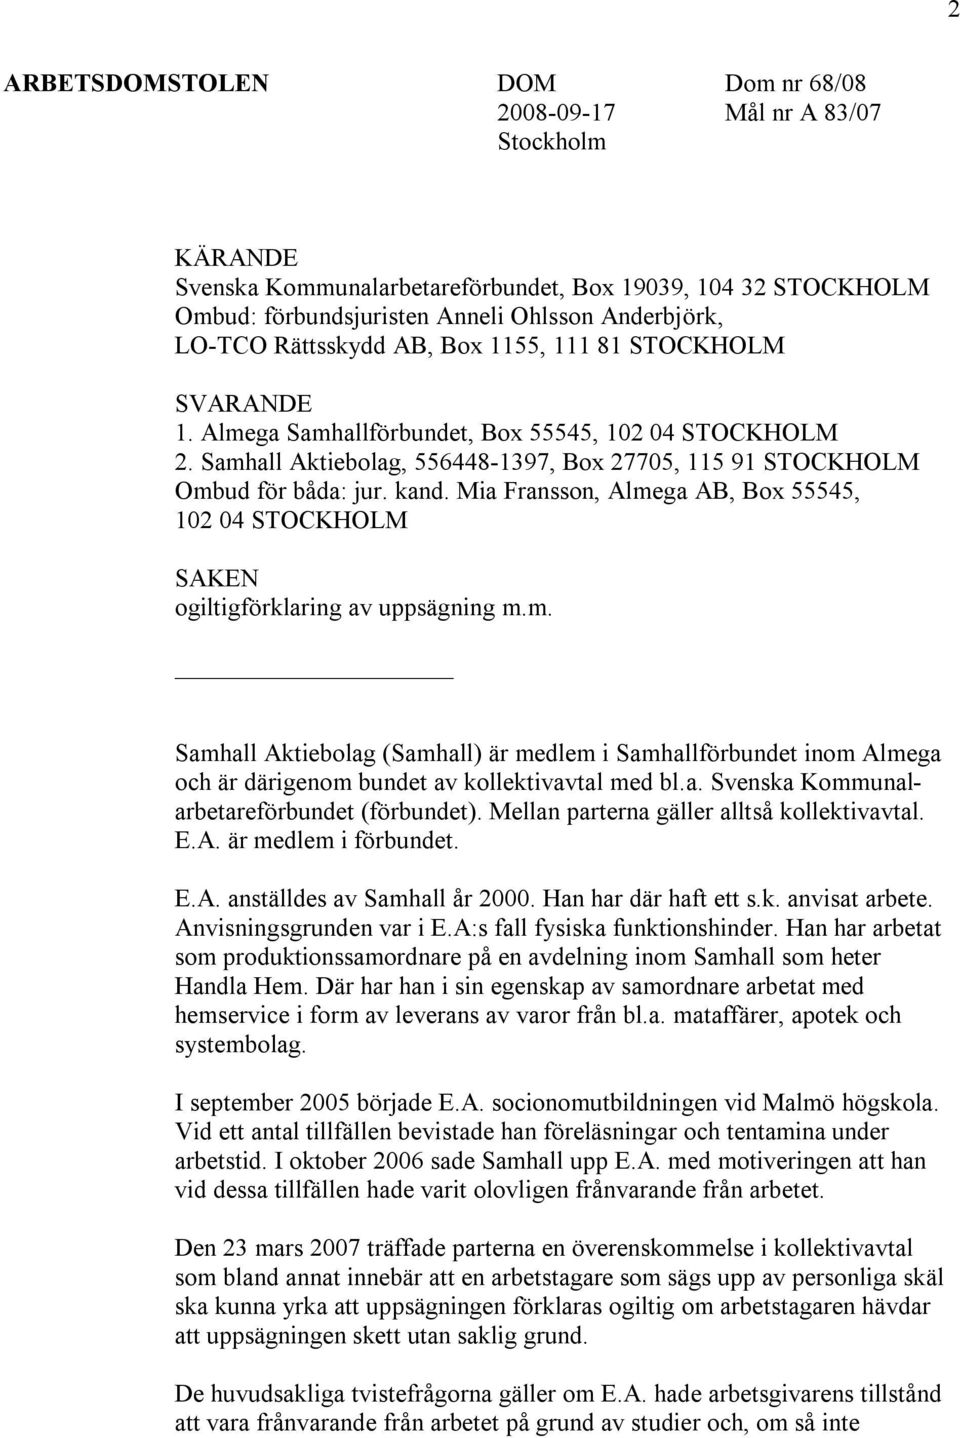 Mia Fransson, Almega AB, Box 55545, 102 04 STOCKHOLM SAKEN ogiltigförklaring av uppsägning m.m. Samhall Aktiebolag (Samhall) är medlem i Samhallförbundet inom Almega och är därigenom bundet av kollektivavtal med bl.